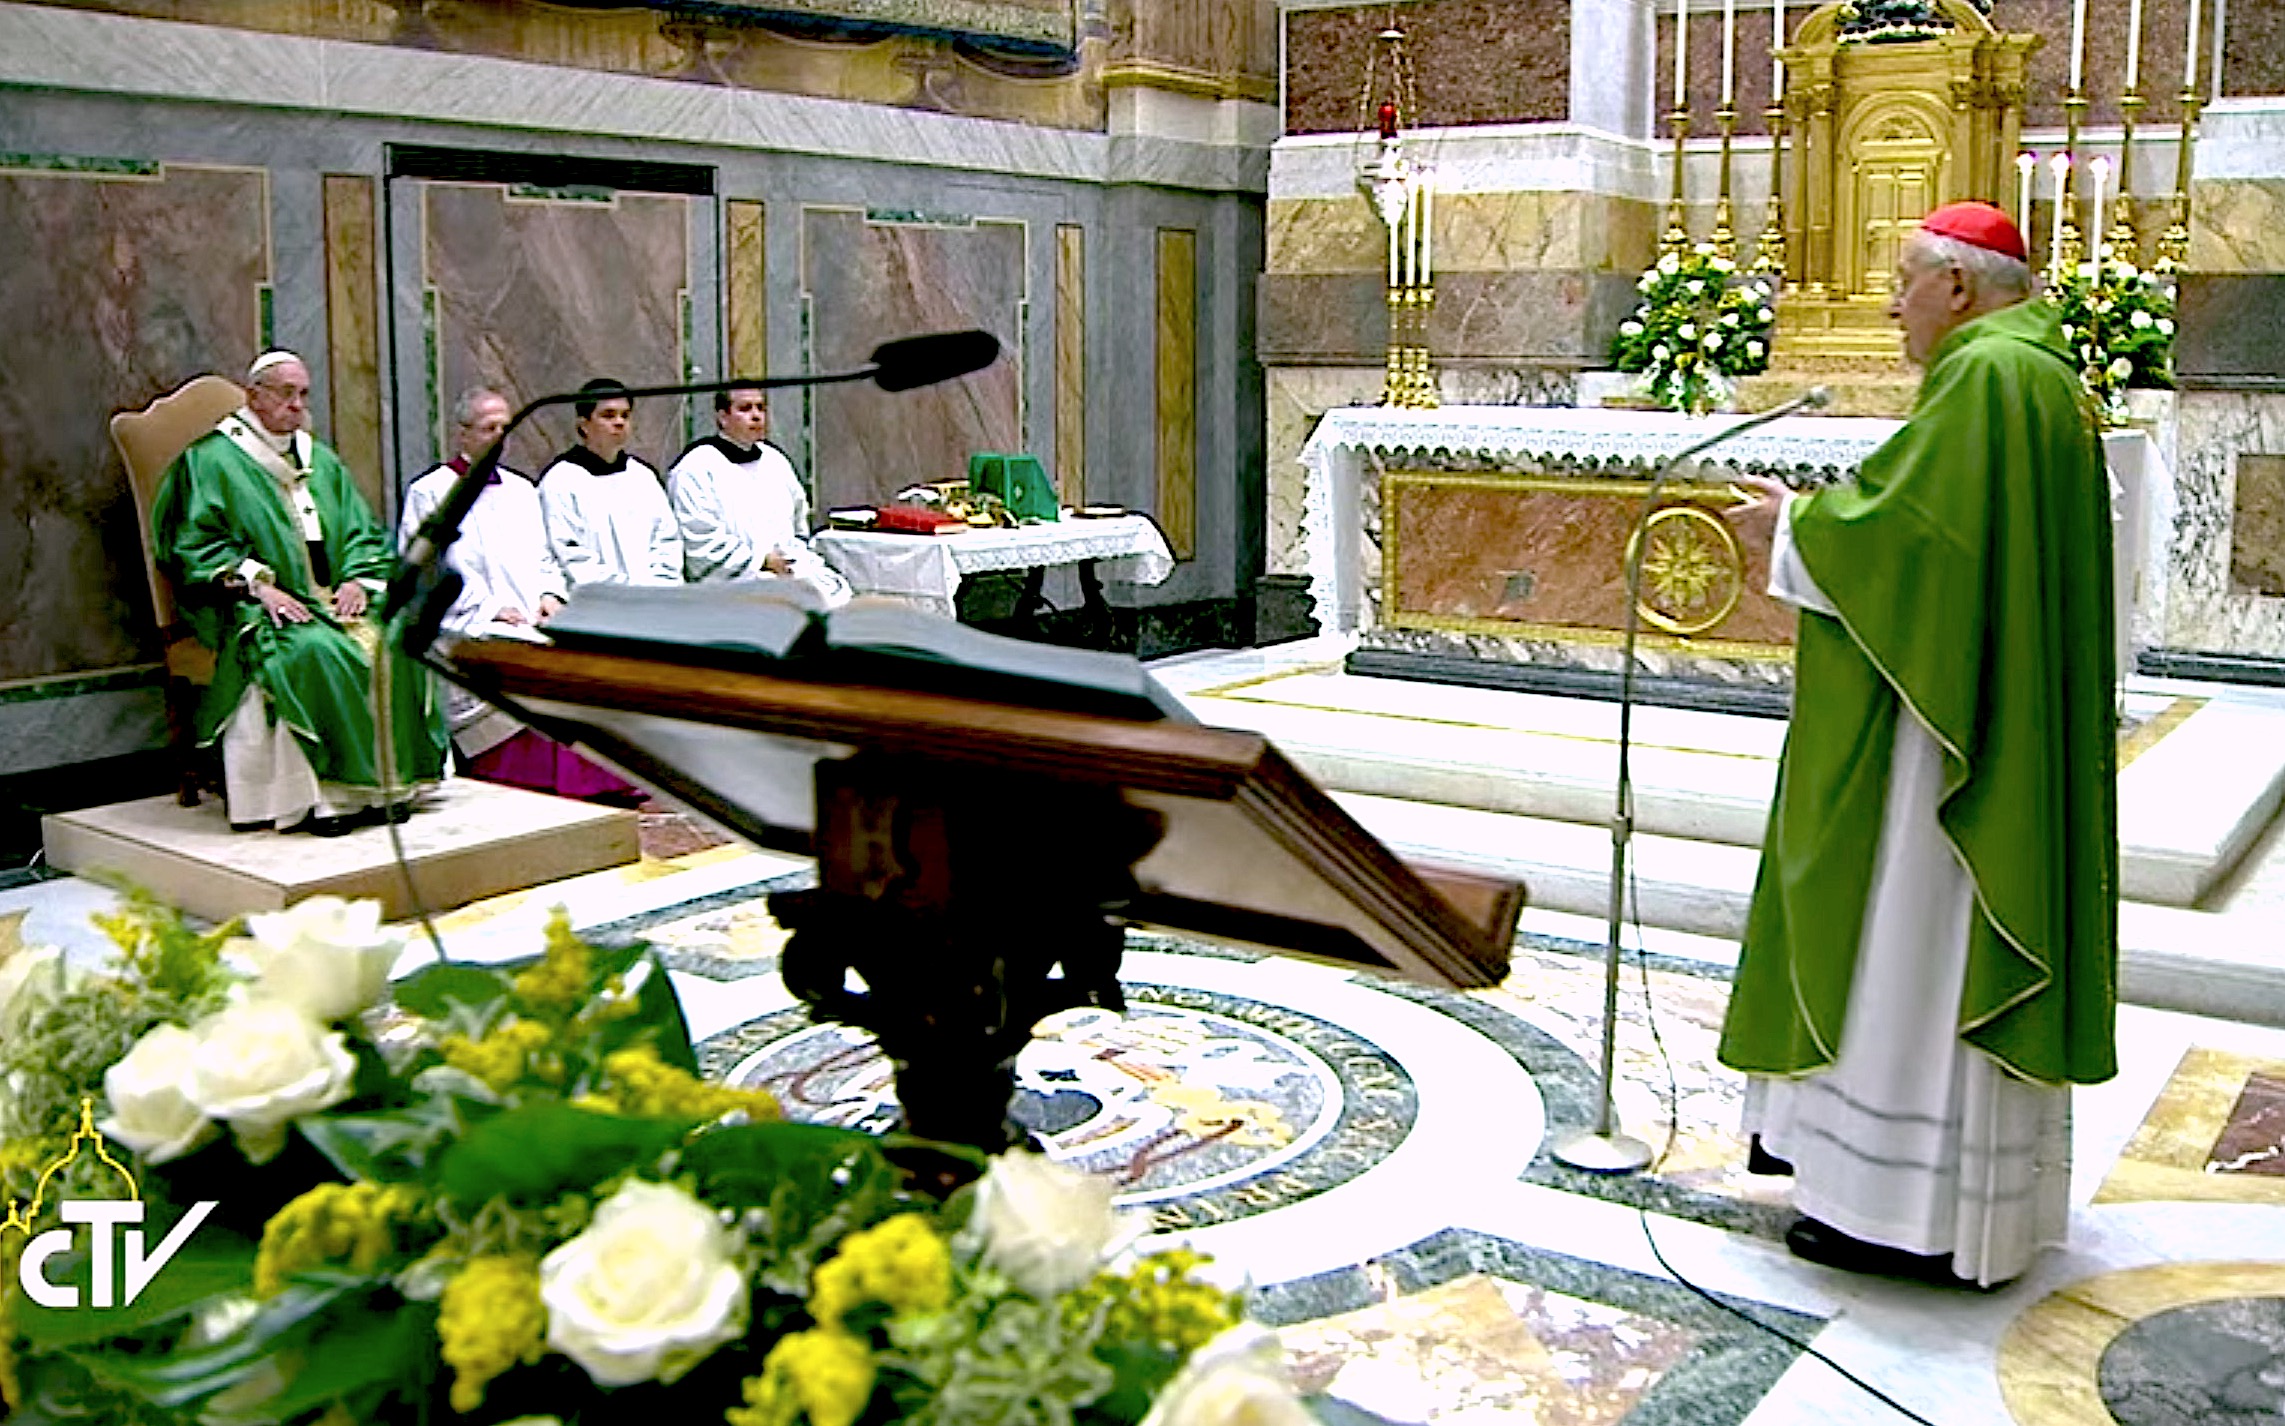 El cardenal Sodano dirige en nombre de los cardenales sus felicitaciones al Papa